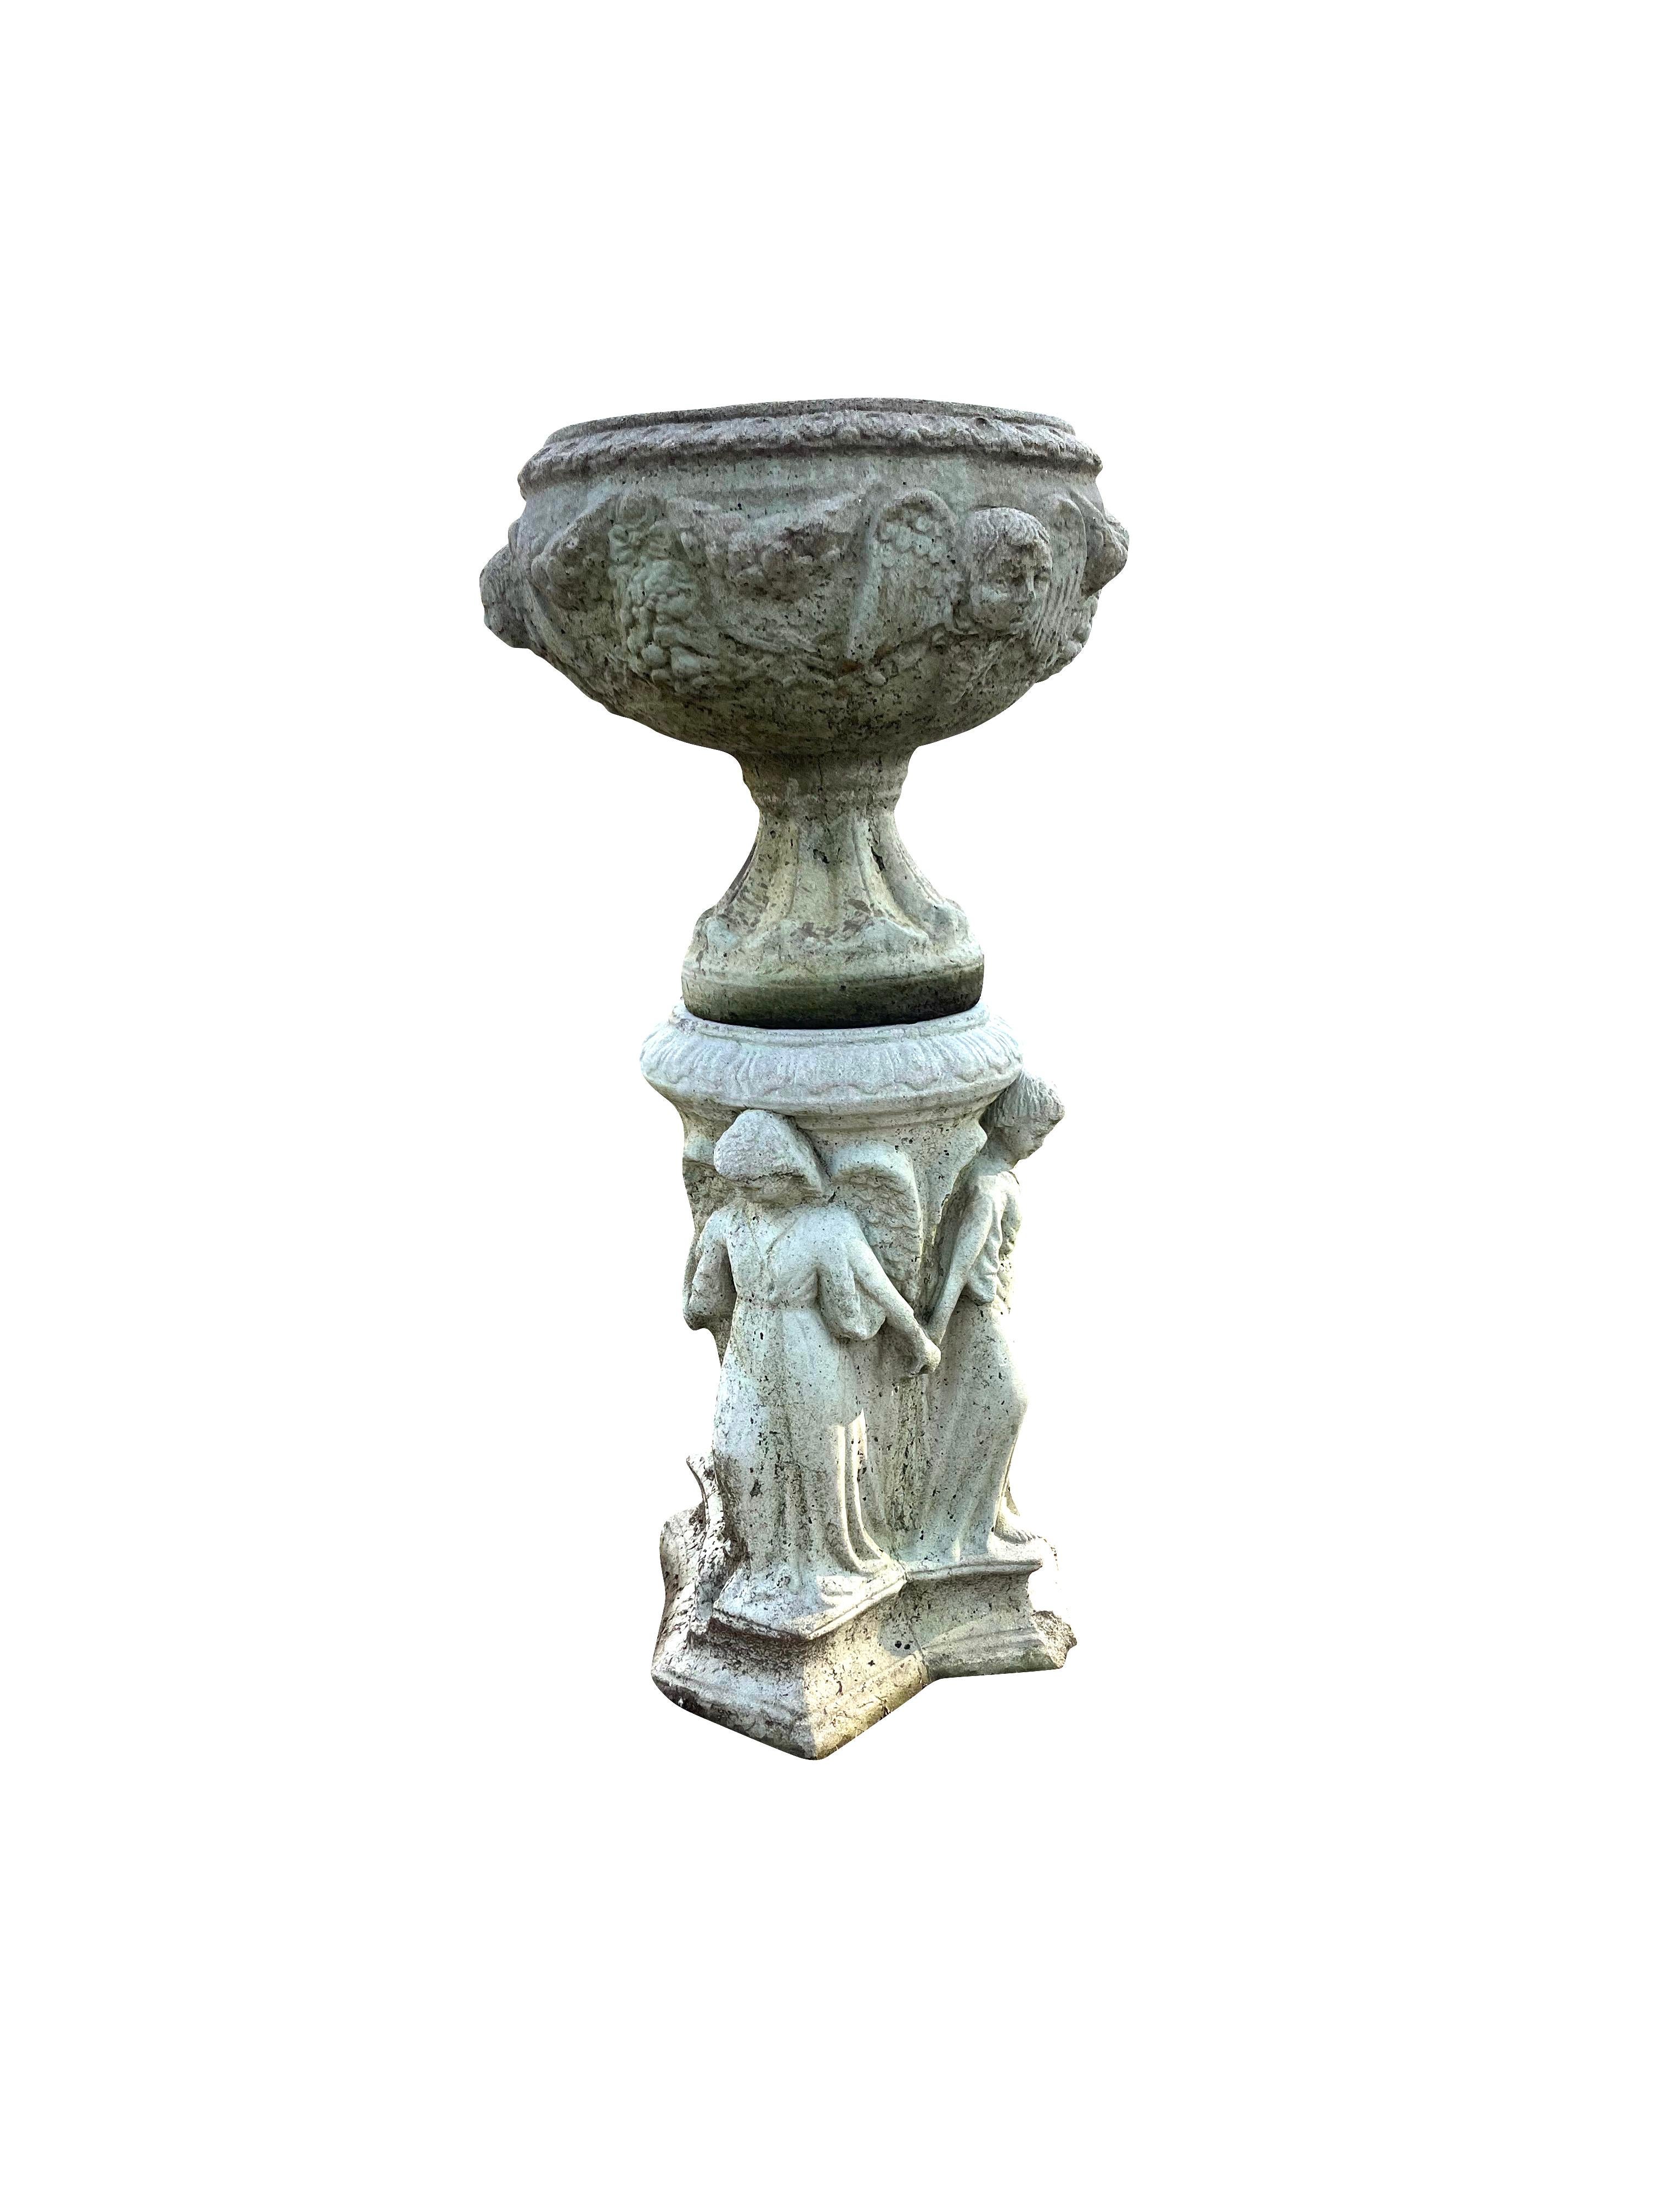 Diese Font/Urne auf einem Sockel ist ein zweiteiliges Gartenelement, das aus einem Zementfont besteht, der oben mit Engels- oder Puttengesichtern und einer Girlande verziert ist und auf einem Fußsockel steht.   Der Brunnen, die Vogeltränke und das